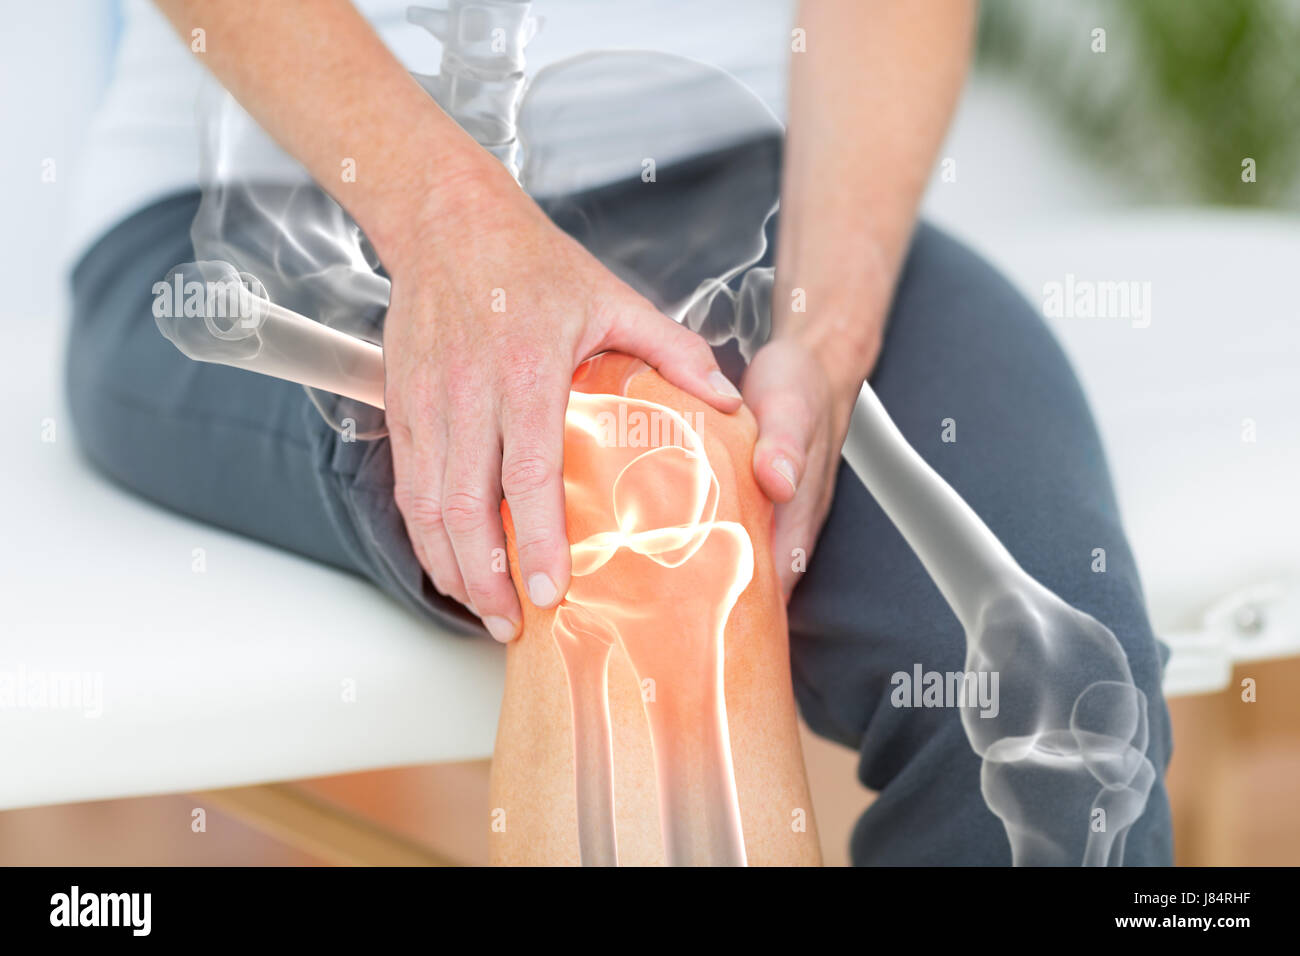 Généré numériquement image de l'homme souffrant de douleur au genou Banque D'Images